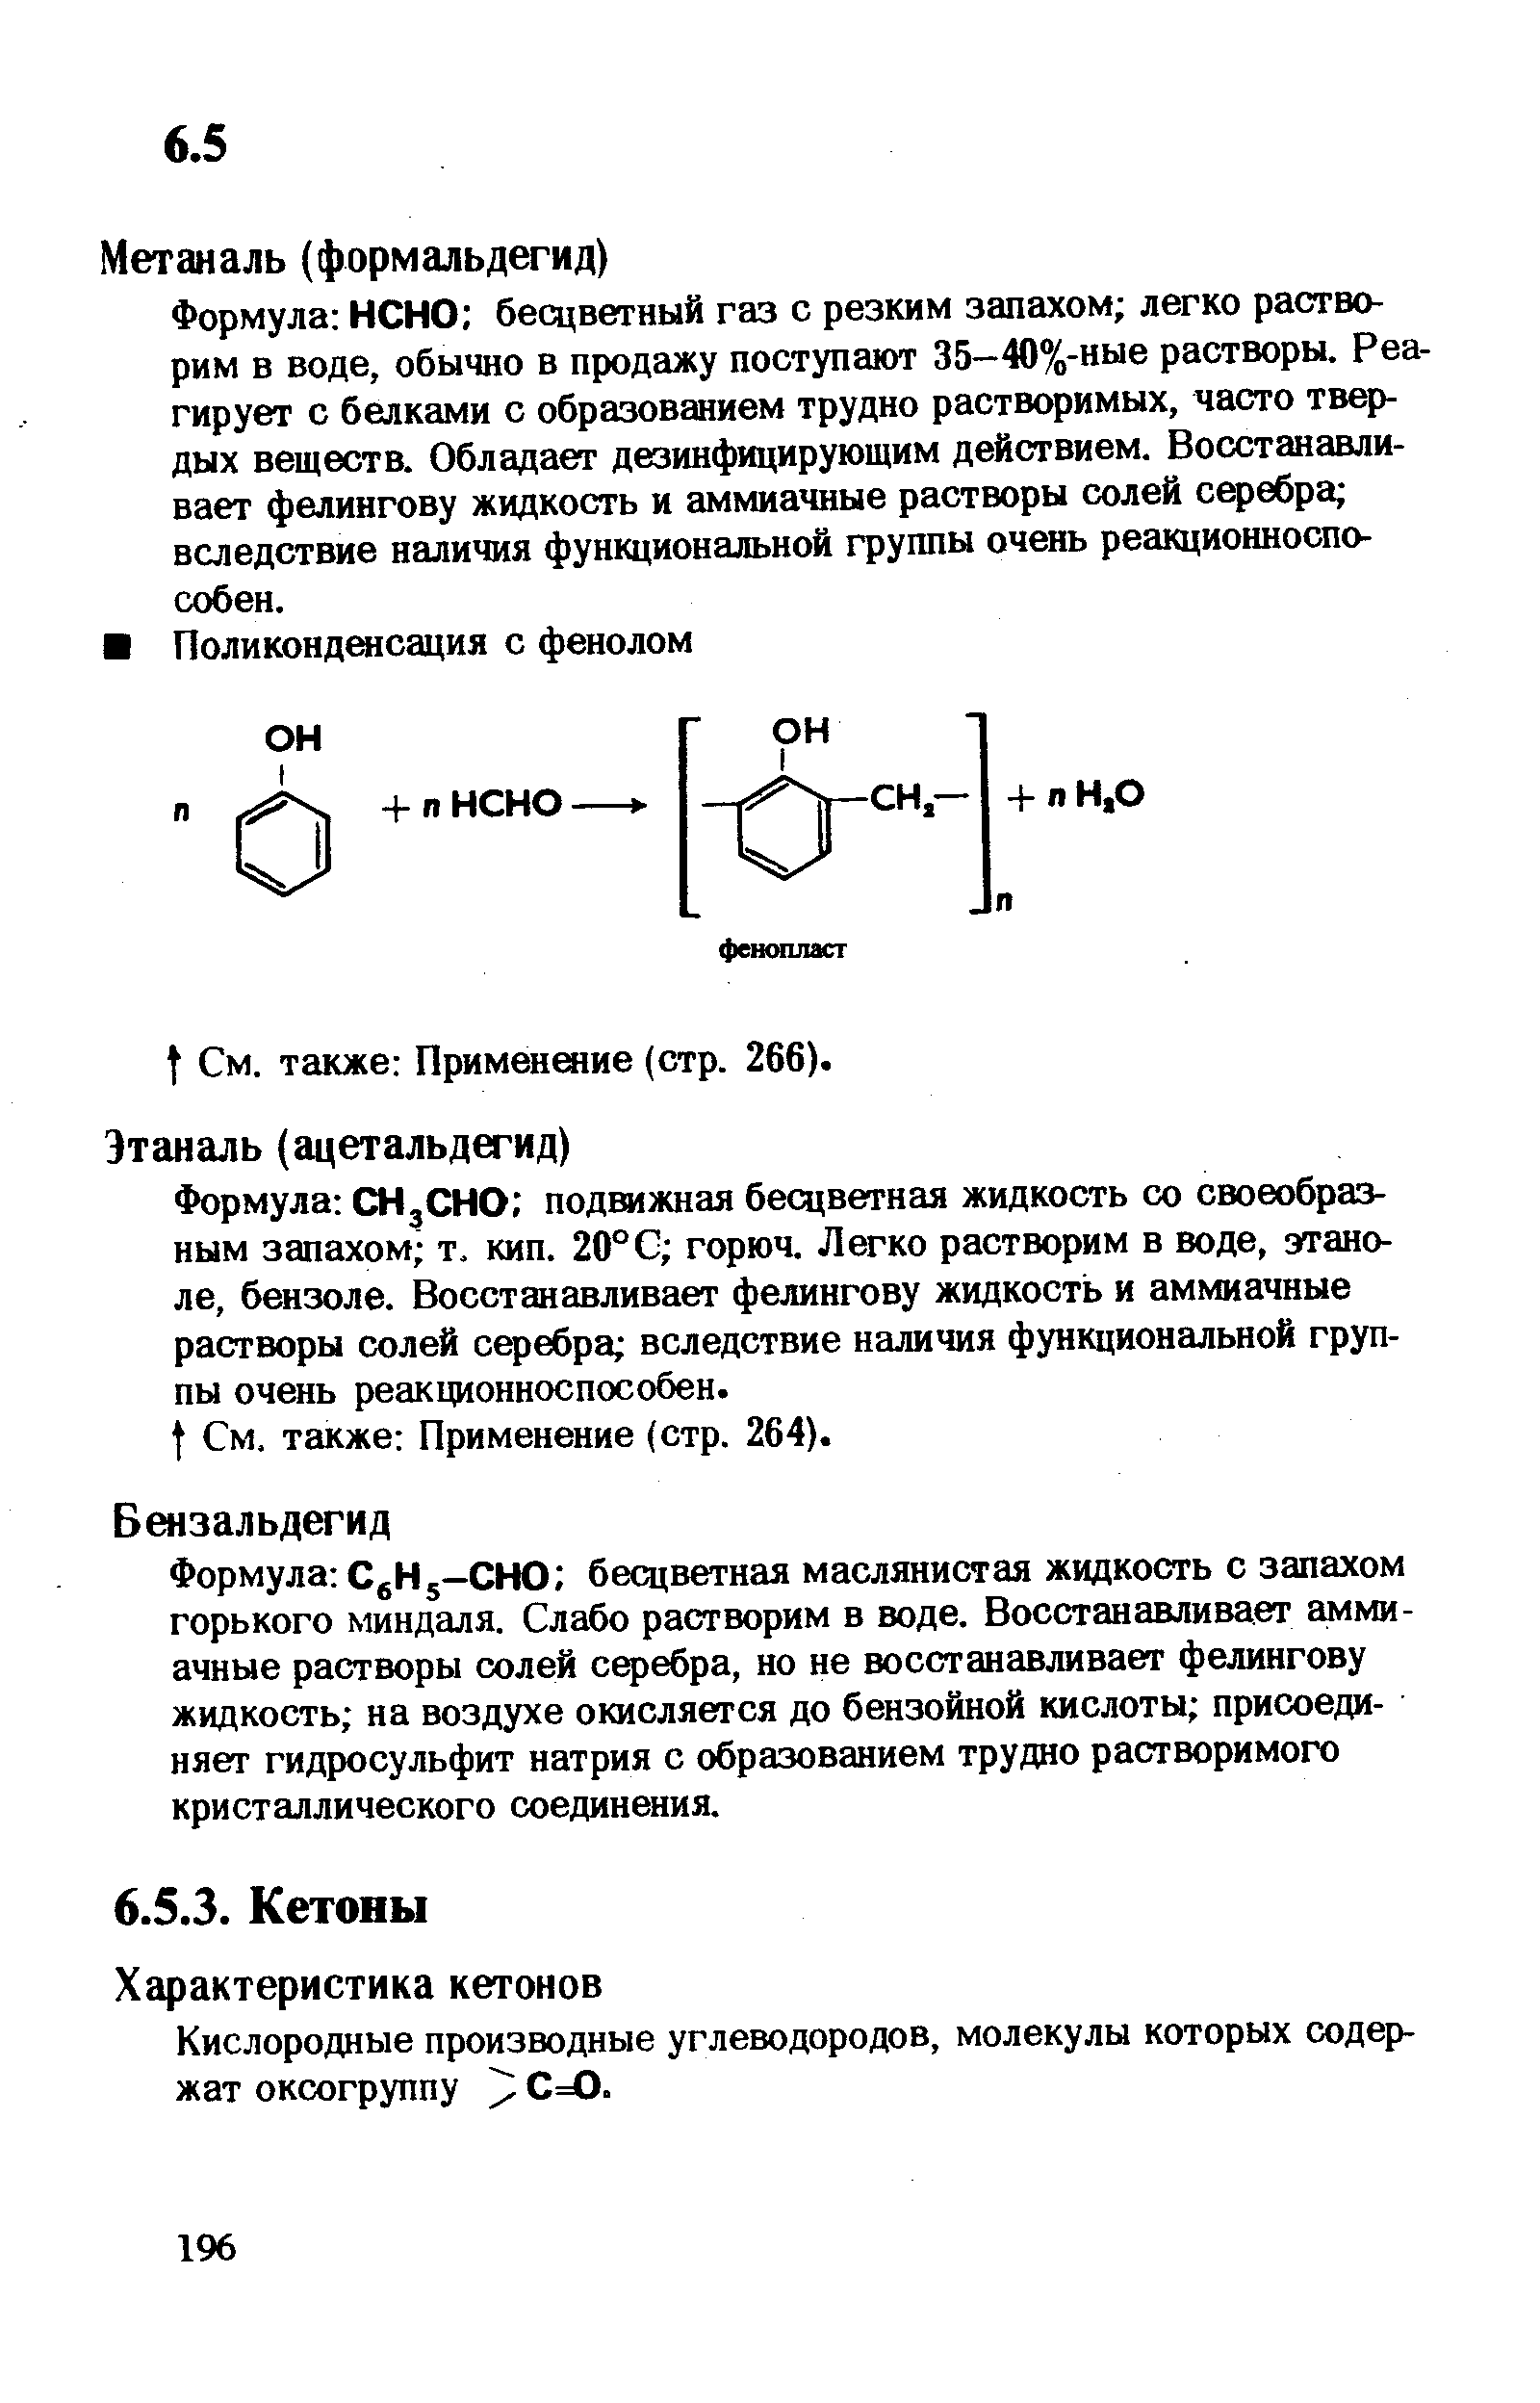 Кислородные производные углеводородов, молекулы которых содержат оксогруппу / С=0.